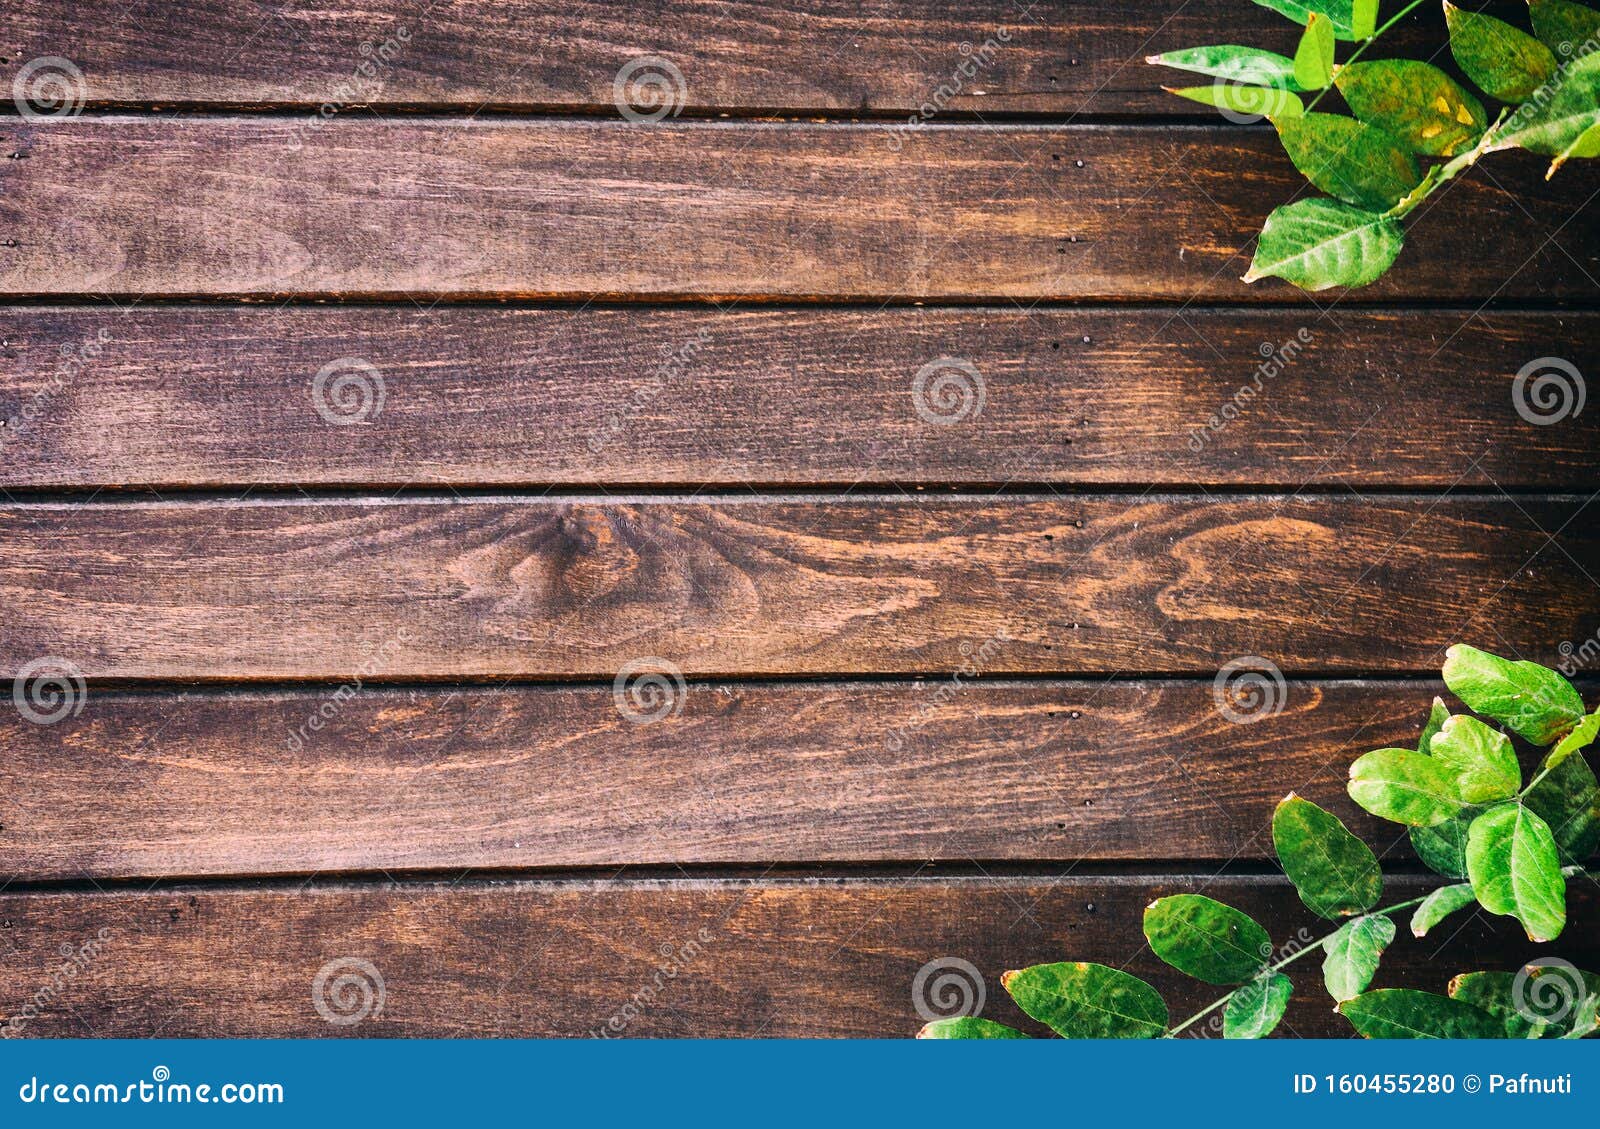 Lá xanh trên sàn gỗ cũ: Tạo nét sống động cho không gian sống của bạn bằng những chiếc lá xanh tươi trên chiếc sàn gỗ cũ kỹ. Hãy xem bức ảnh để khám phá cách để tổng hợp các yếu tố thiên nhiên và nội thất.